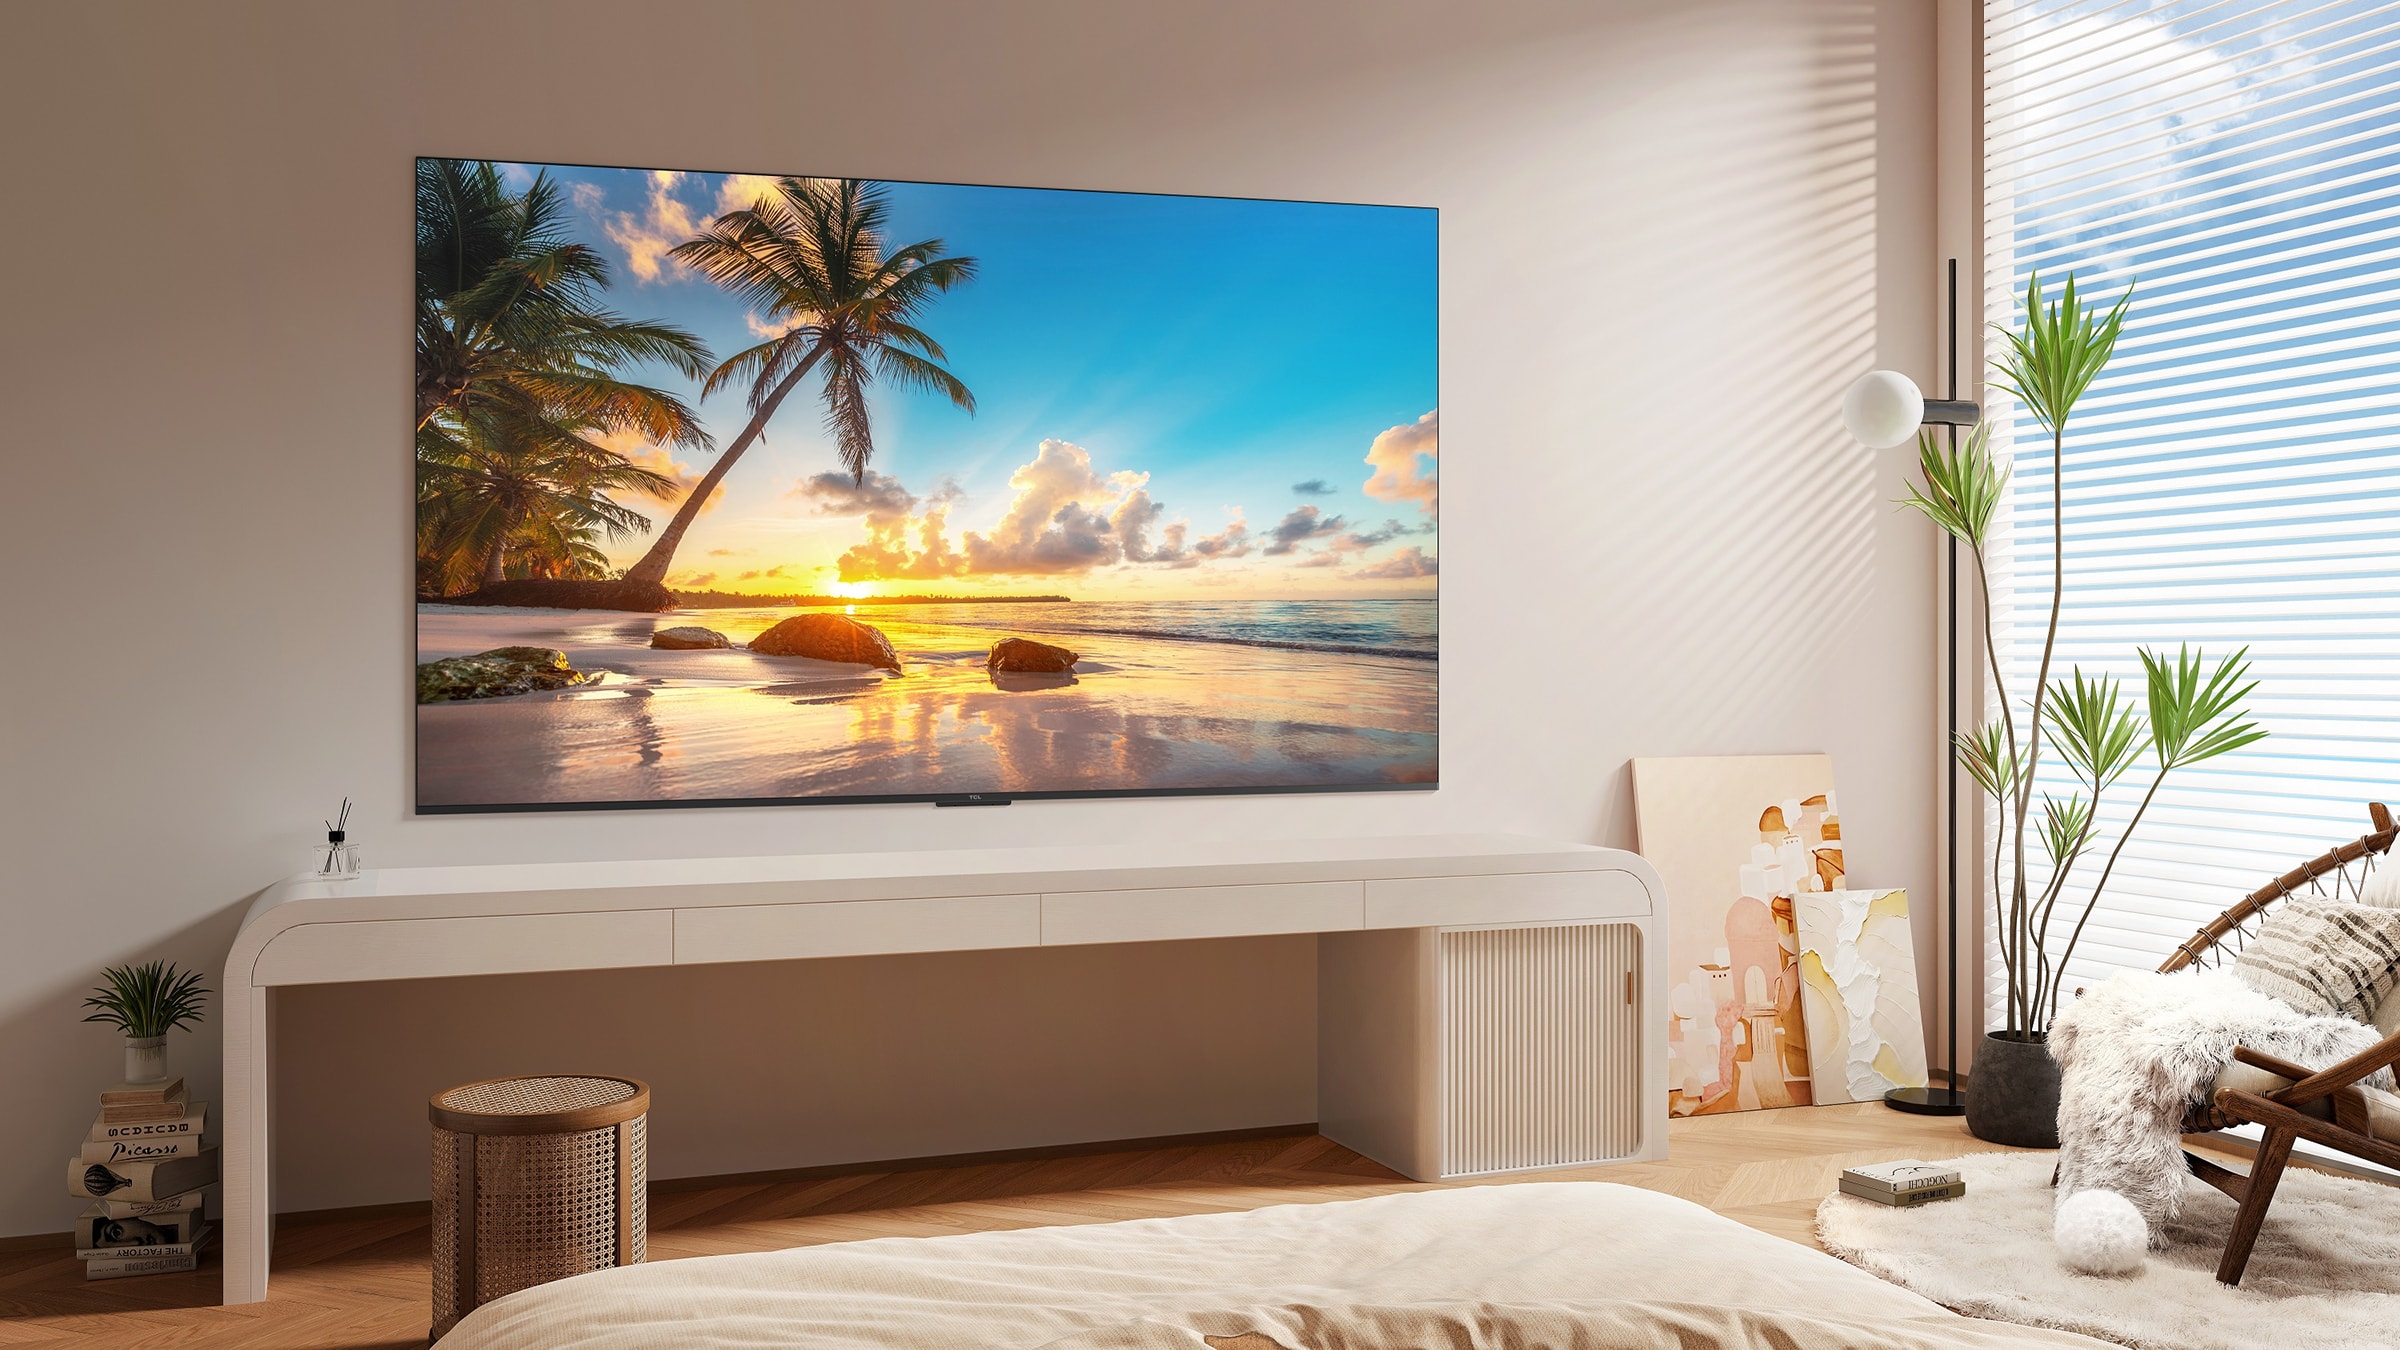 TCL TV LED 4K 126 cm Ultra HD Google TV 50" - 50P71B